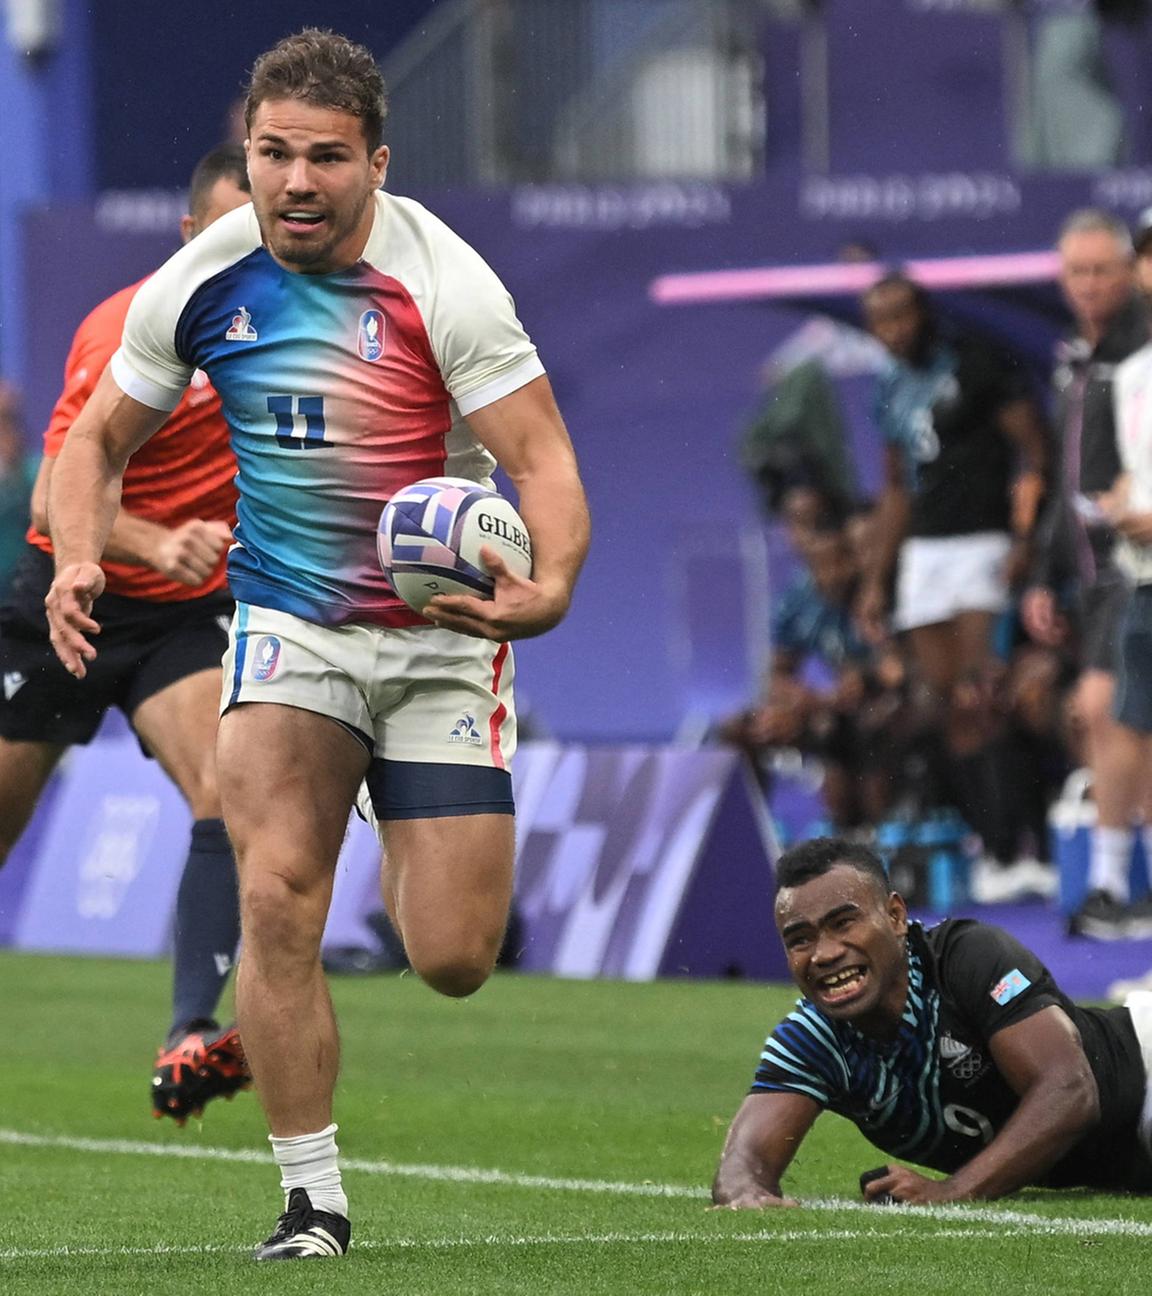 Antoine Dupont in Aktion während des 7er-Rugby-Finales zwischen Frankreich und Fidji.